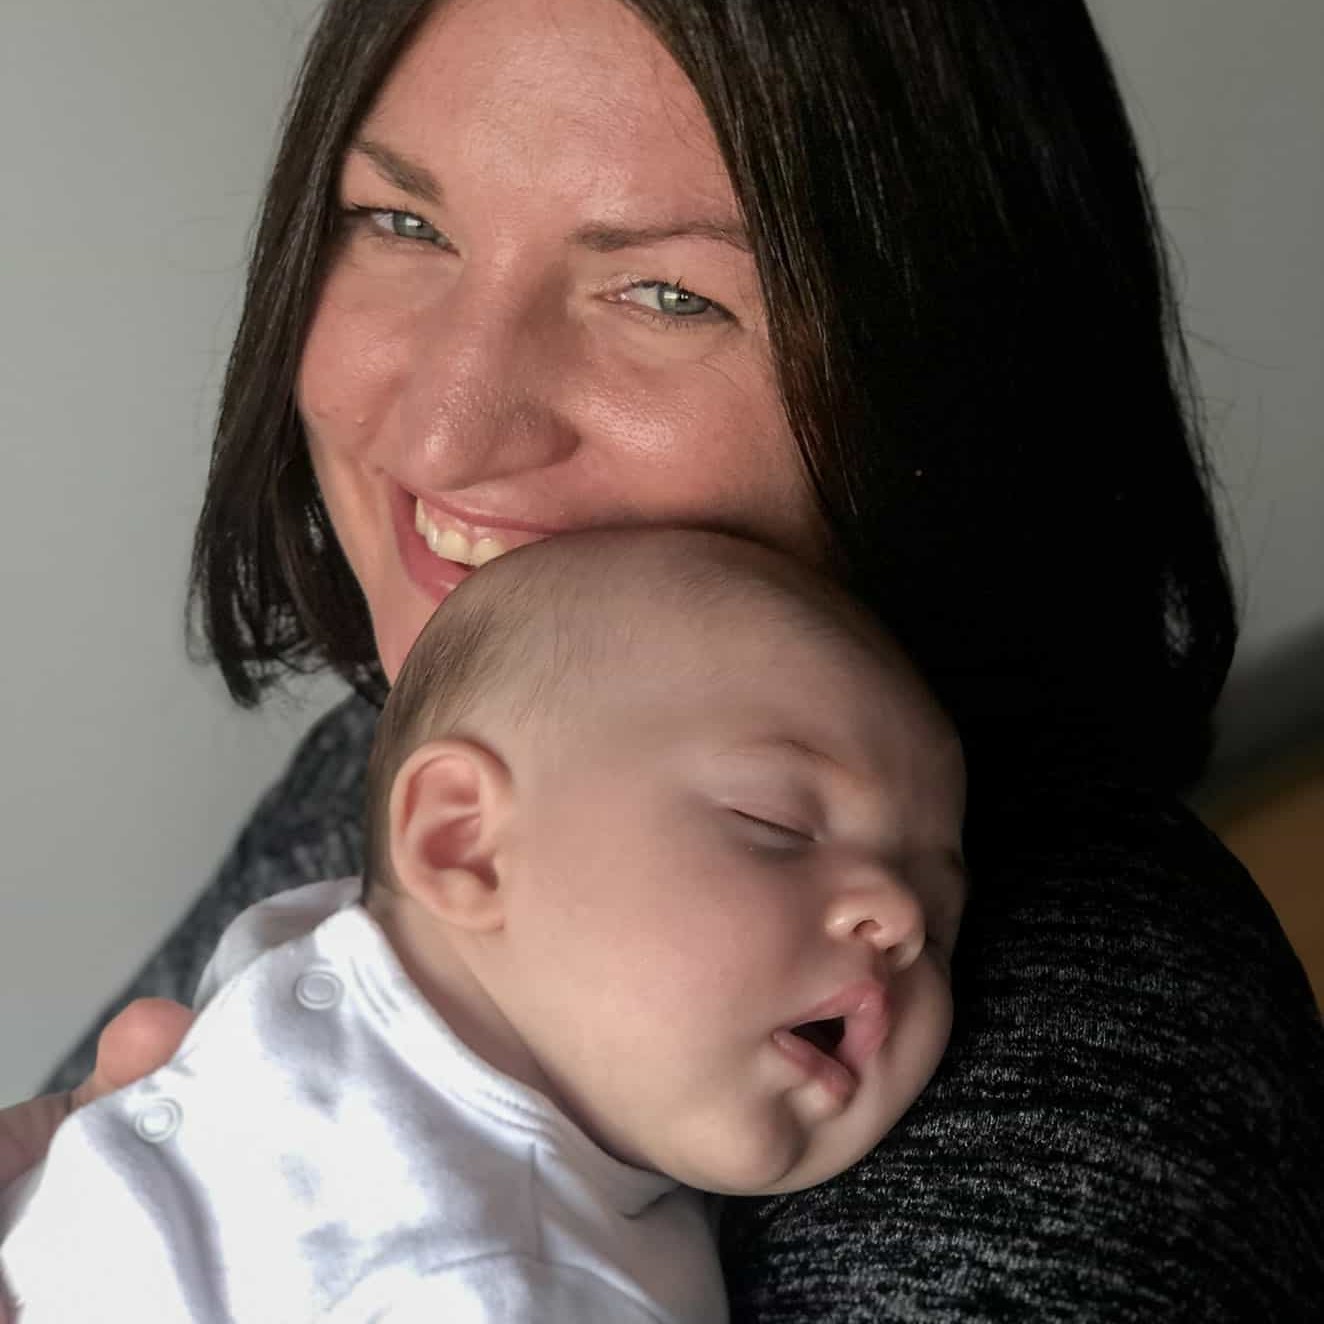 newborn-and-parent-photos-with-mum,-dad-at-home-002 8